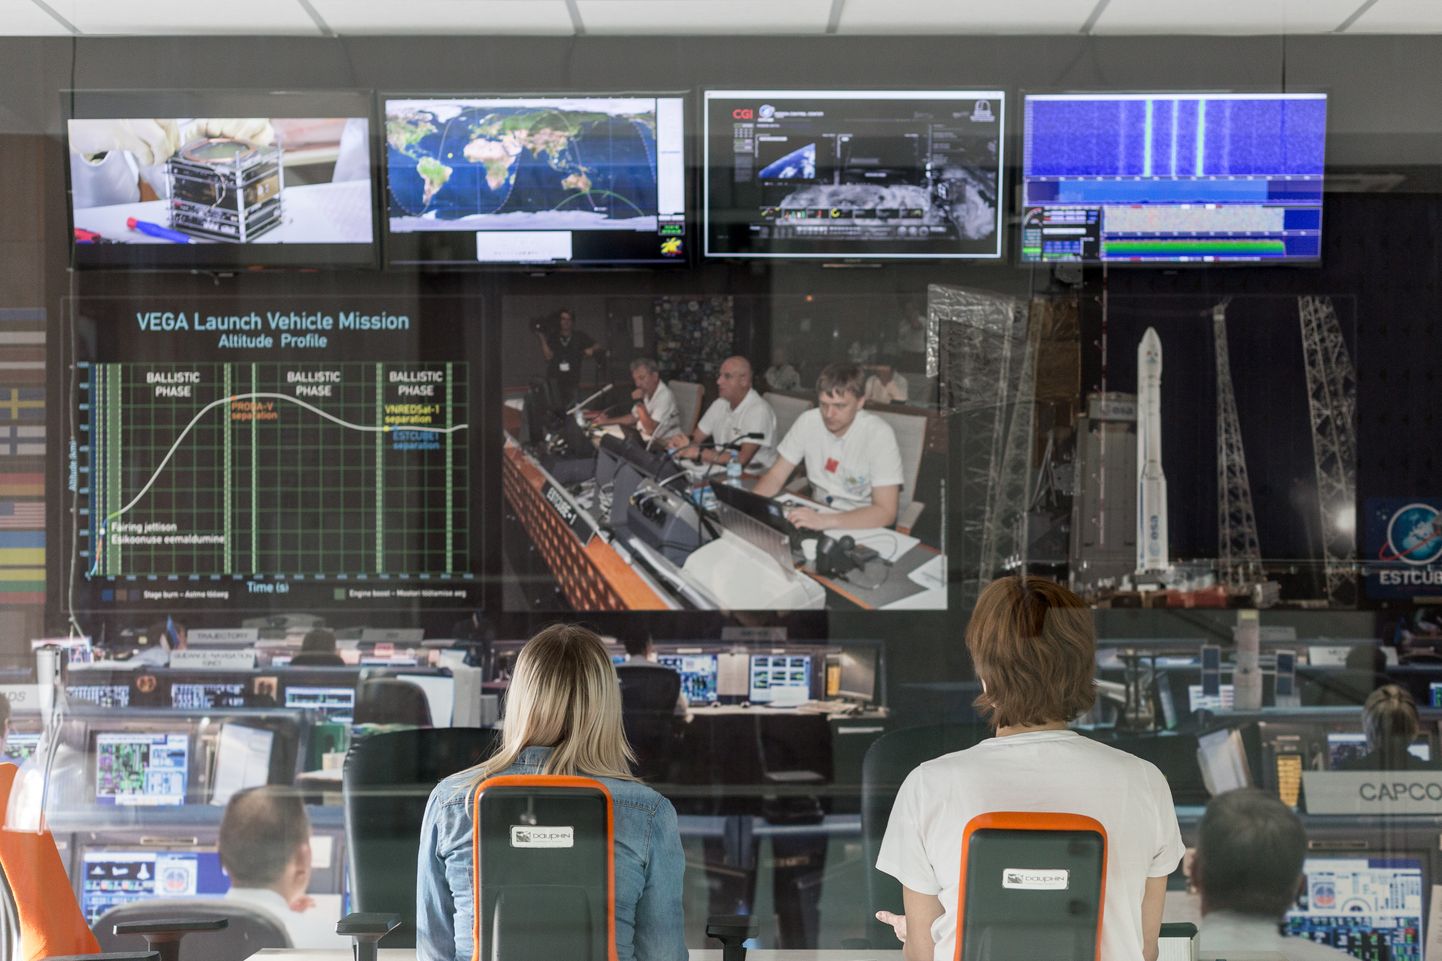 Eesti ülikoolide satelliidimissioonid on loonud kohalikele ettevõtetele häid eeldusi kosmoseäris kaasa rääkimiseks.